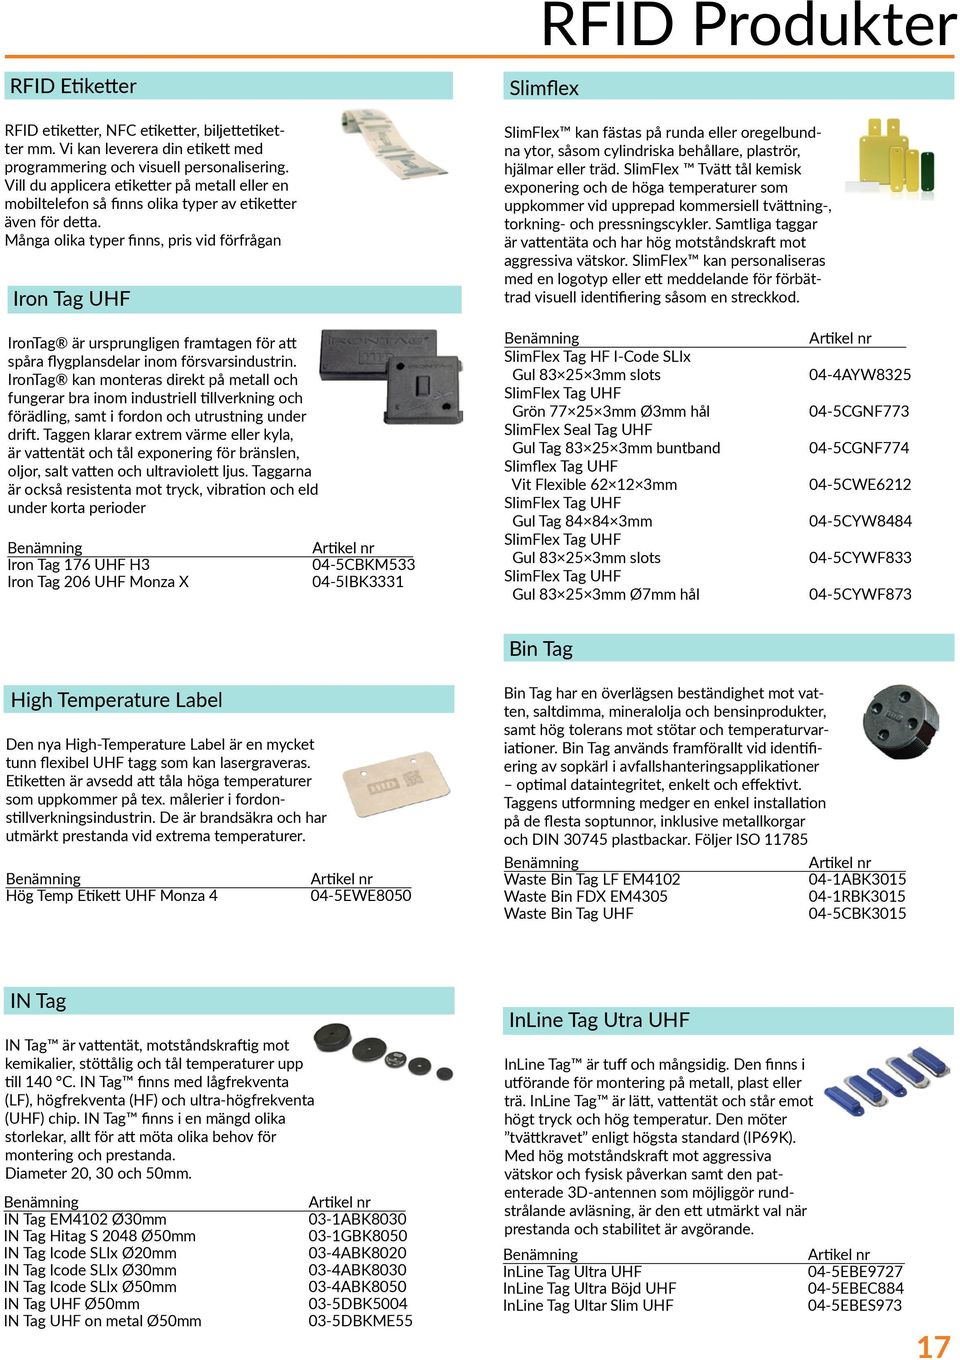 Många olika typer finns, pris vid förfrågan Iron Tag UHF RFID Produkter Slimflex SlimFlex kan fästas på runda eller oregelbundna ytor, såsom cylindriska behållare, plaströr, hjälmar eller träd.